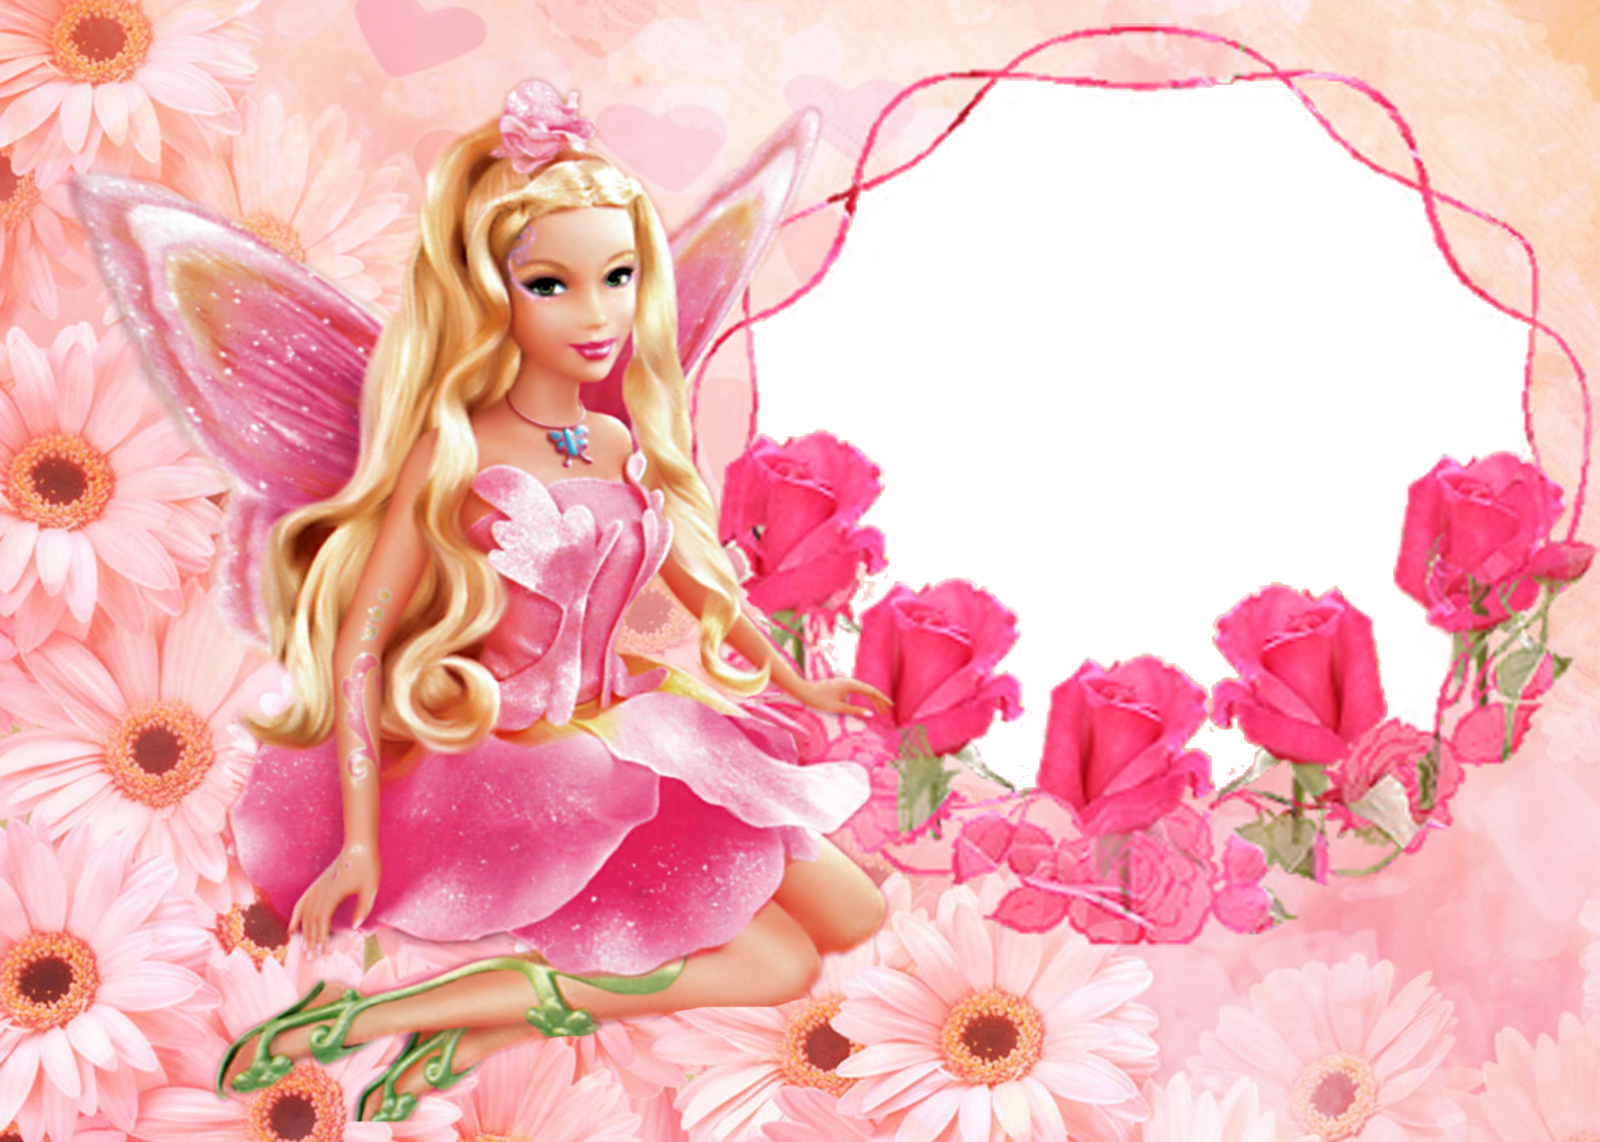 Nền Barbie thiết kế miễn phí - Yêu thích Barbie mà muốn tạo ra nền riêng của mình? Hãy tải ngay mẫu thiết kế miễn phí của chúng tôi! Với hàng chục mẫu nền độc đáo và đa dạng, bạn sẽ có thể chọn lựa một kiểu tùy thích và tùy chỉnh theo ý muốn của mình. Hãy để khả năng sáng tạo của bạn tỏa sáng, tải ngay mẫu thiết kế miễn phí Barbie! 